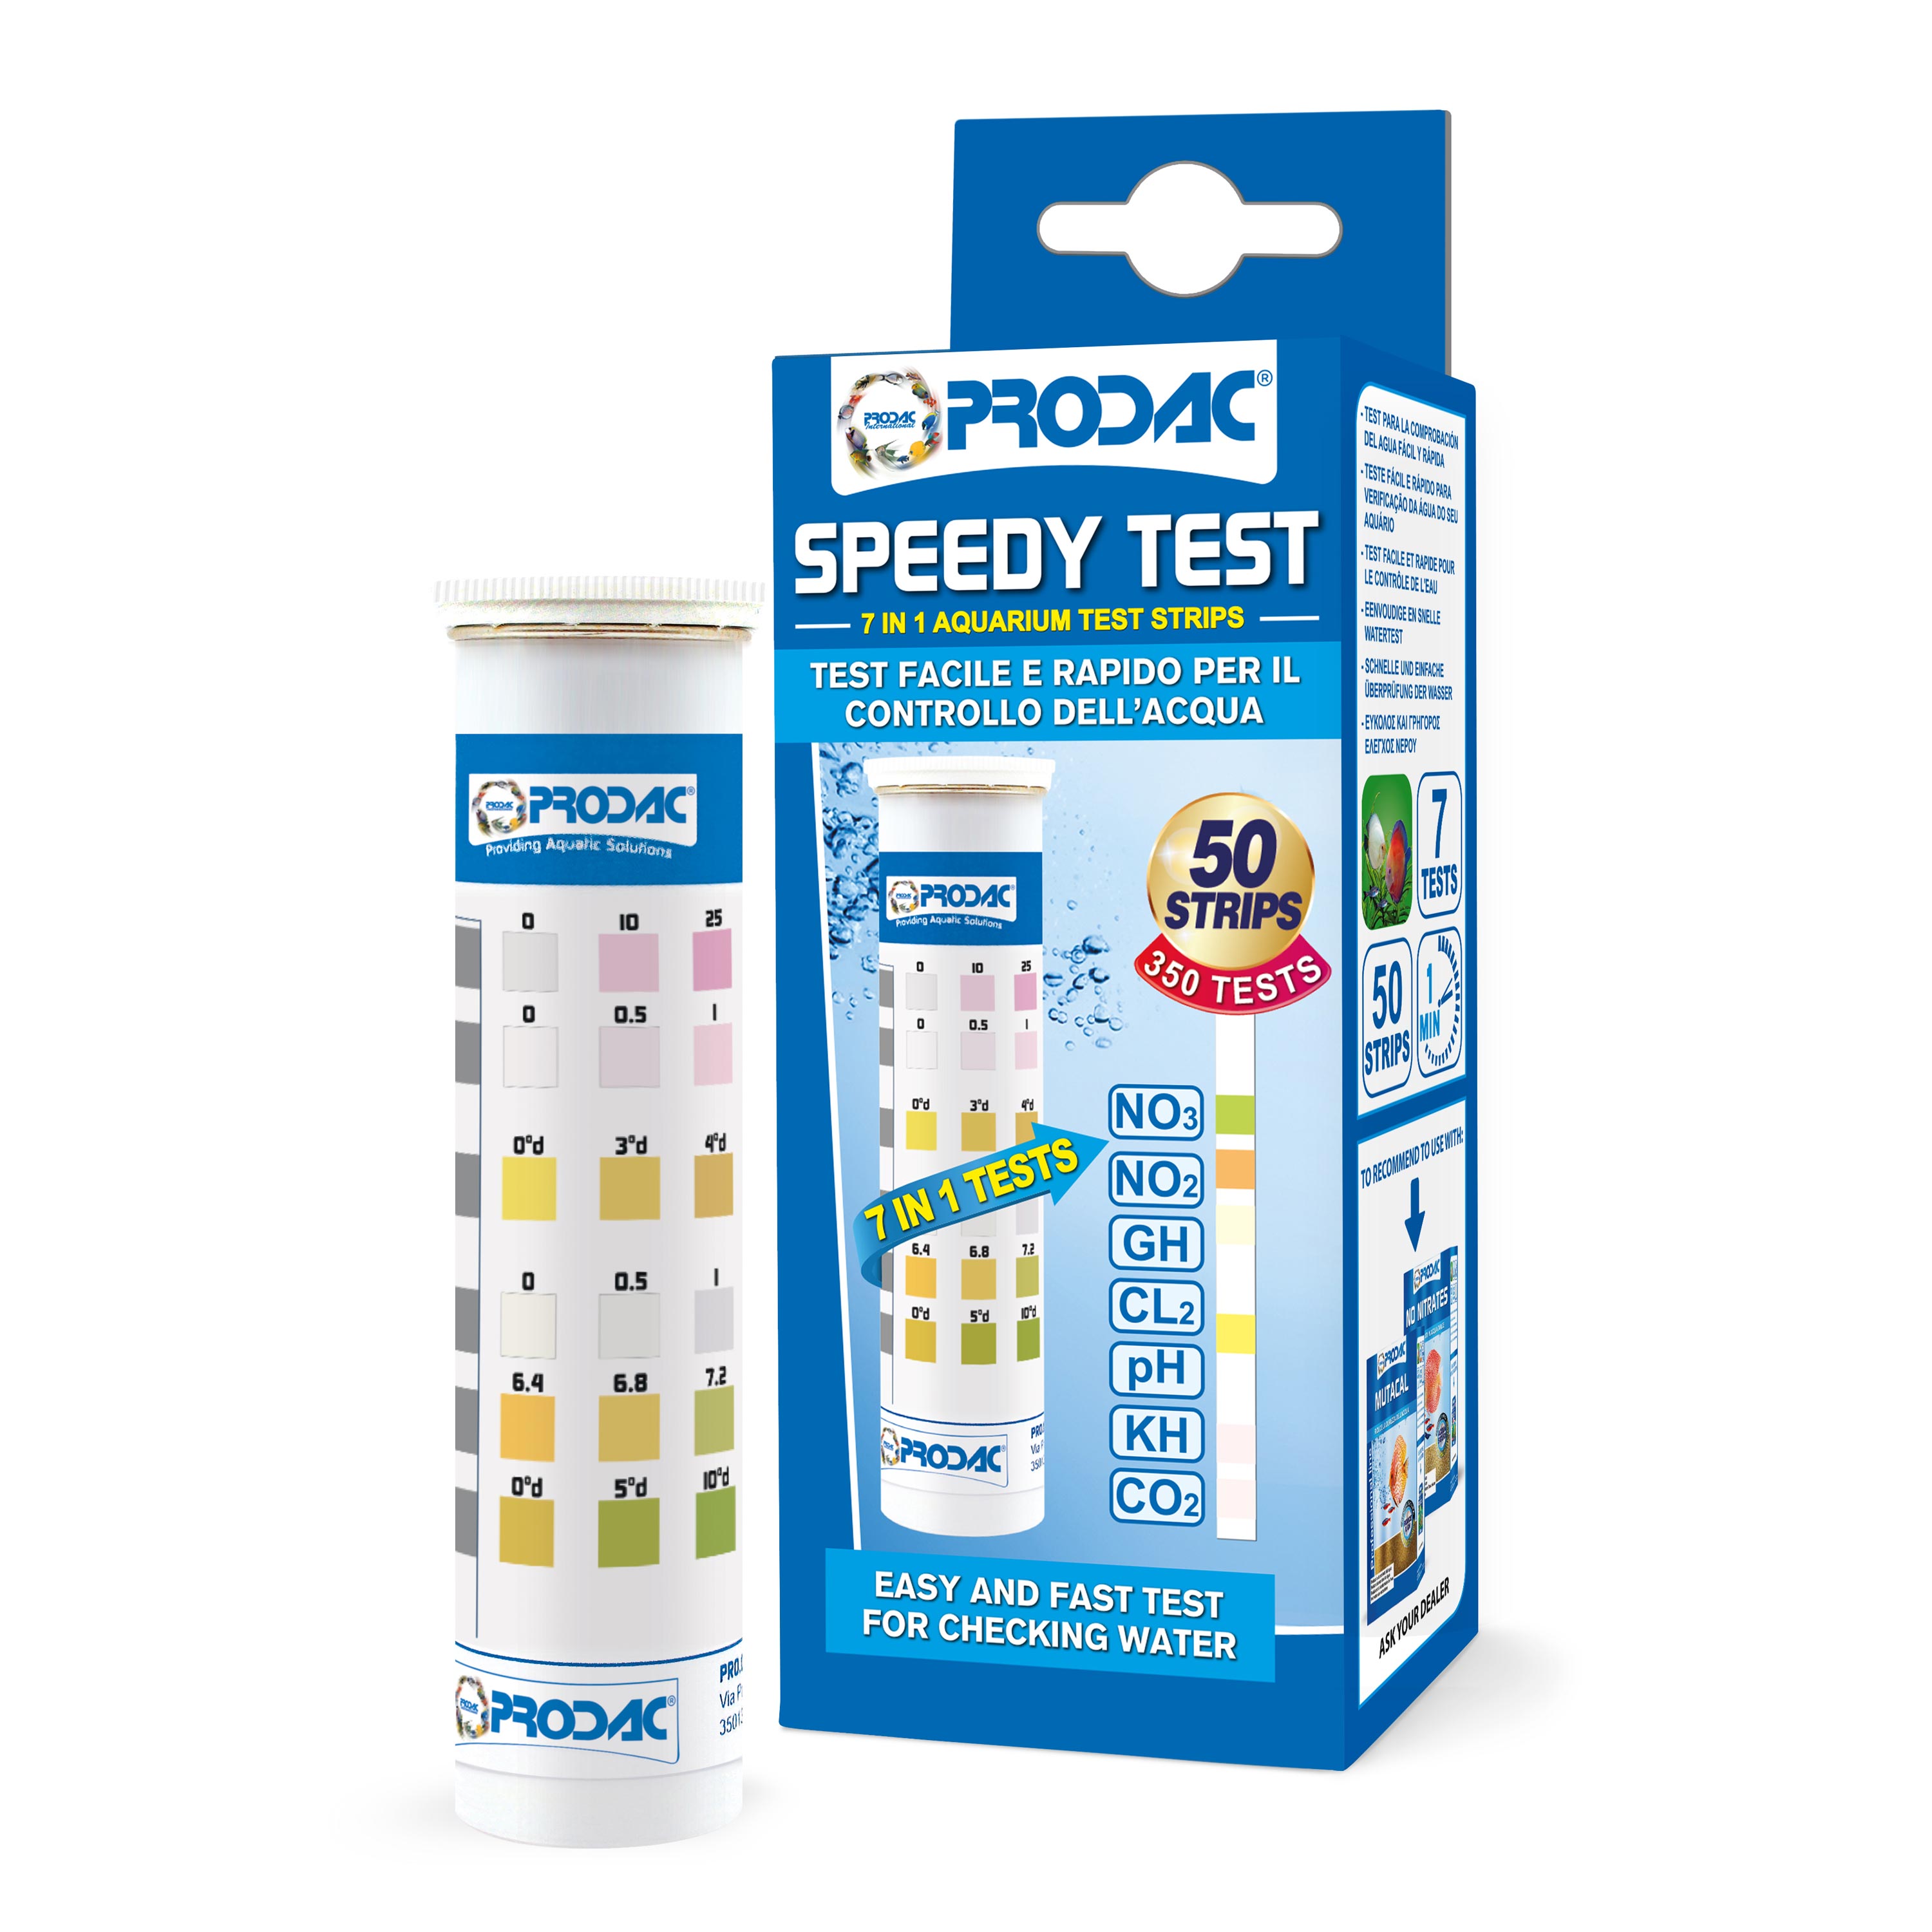 PRODAC Speedy Test 7 in 1 - 50 Test strips